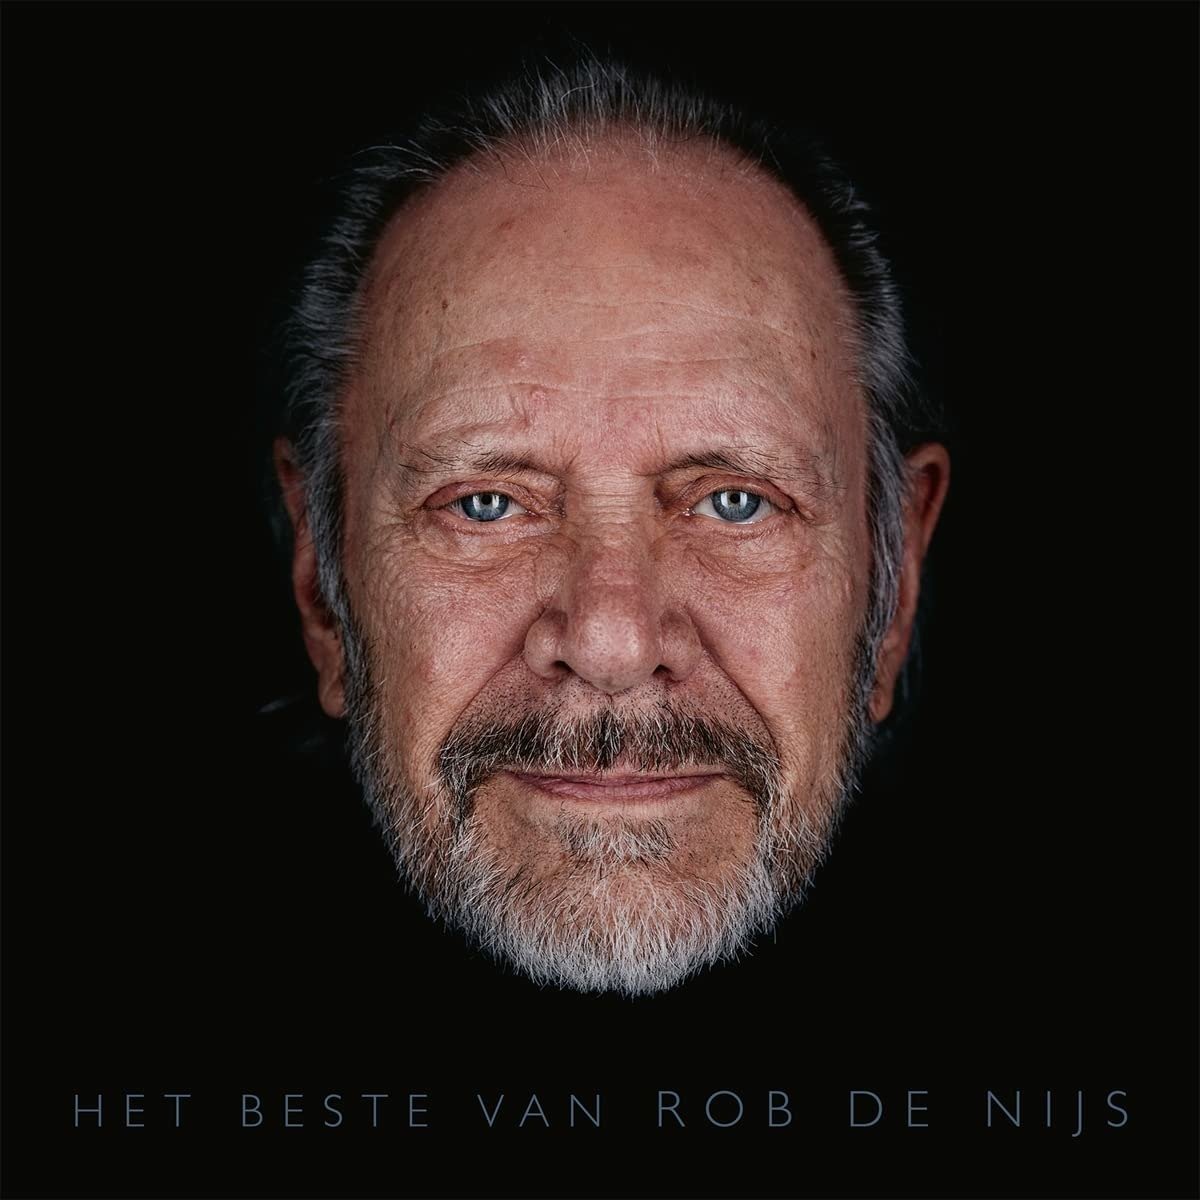 NIJS, ROB DE - HET BESTE VAN, Vinyl